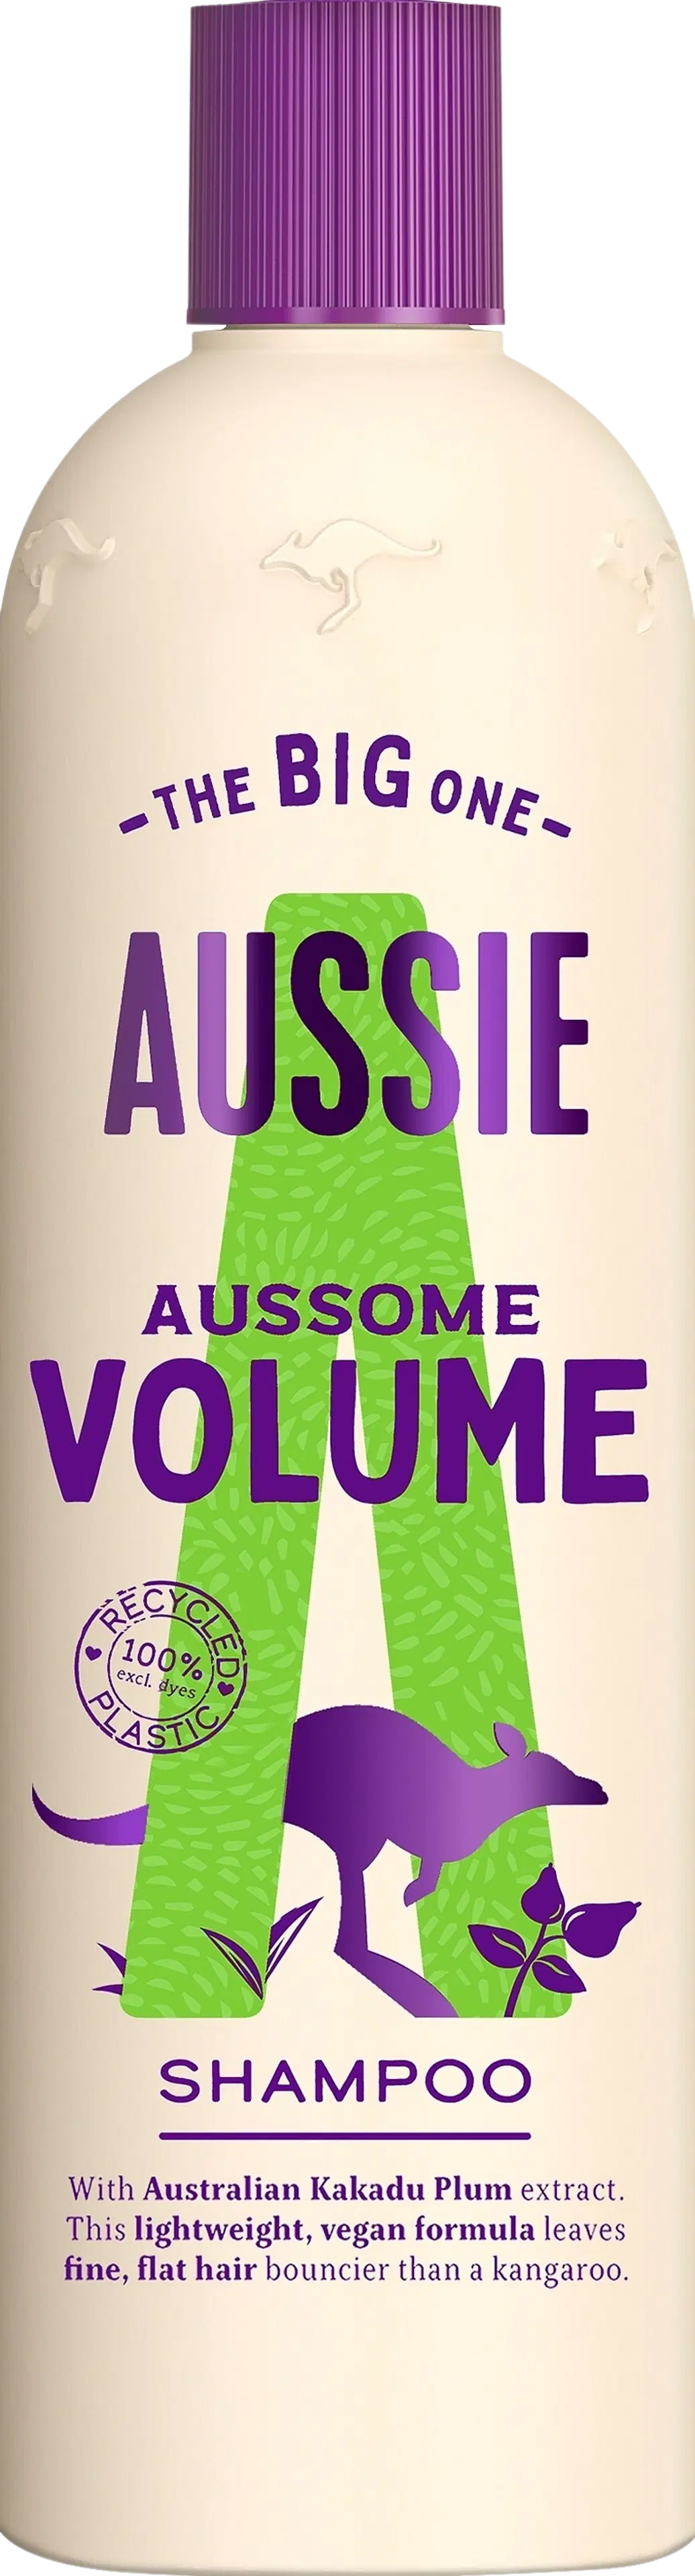 Aussie 500ml Aussome Volume Shampoo